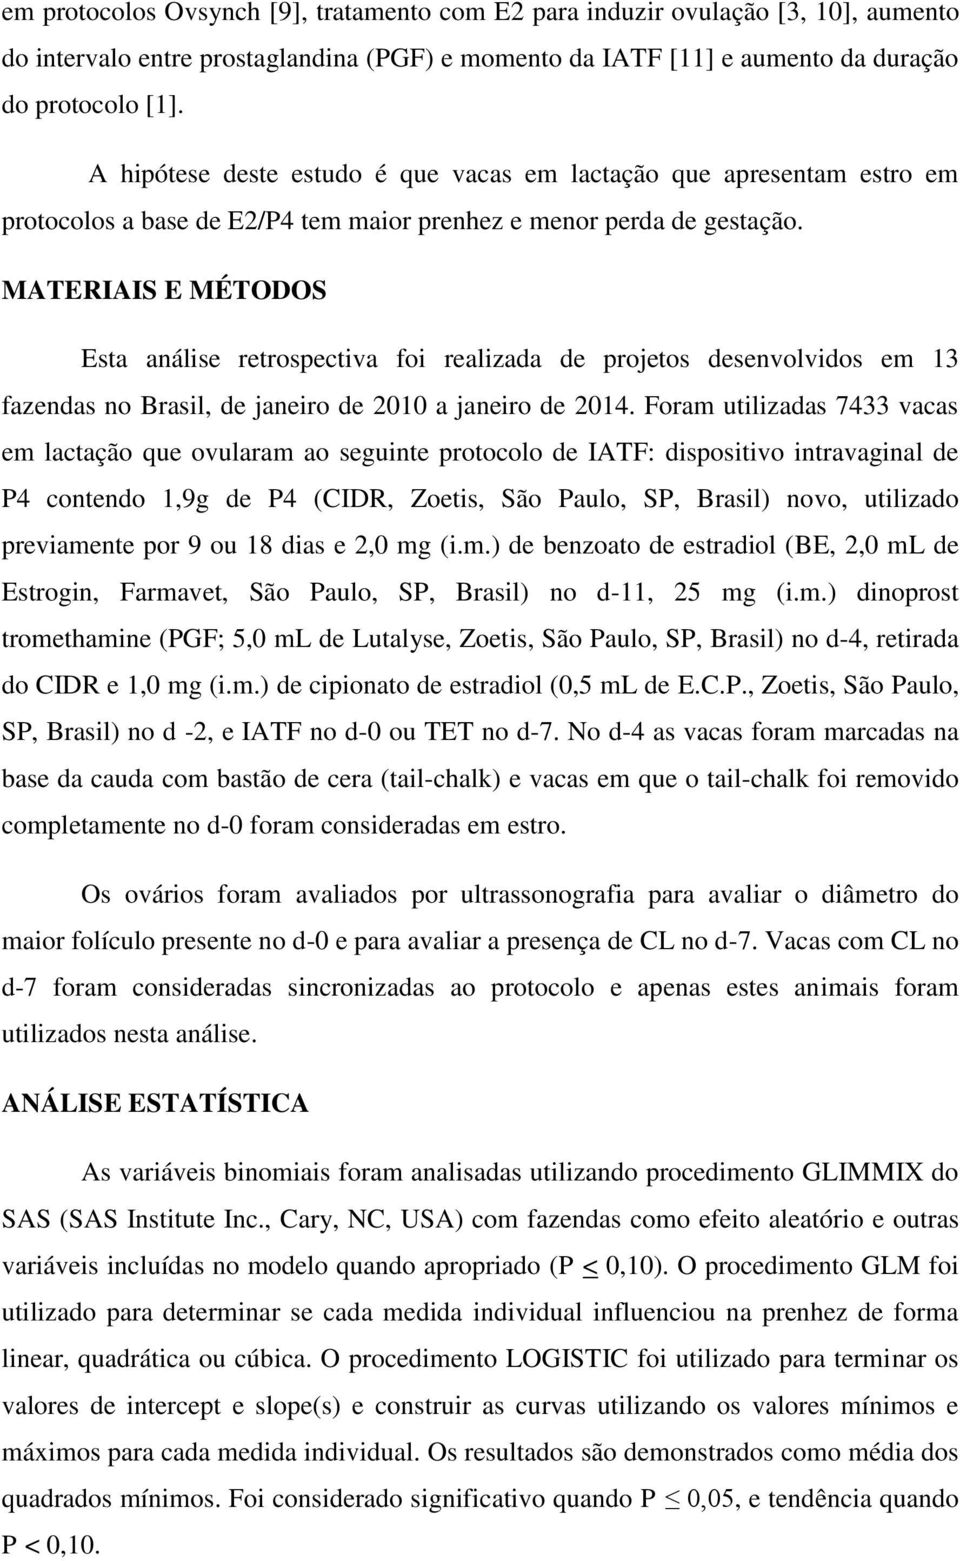 MATERIAIS E MÉTODOS Esta análise retrospectiva foi realizada de projetos desenvolvidos em 13 fazendas no Brasil, de janeiro de 2010 a janeiro de 2014.